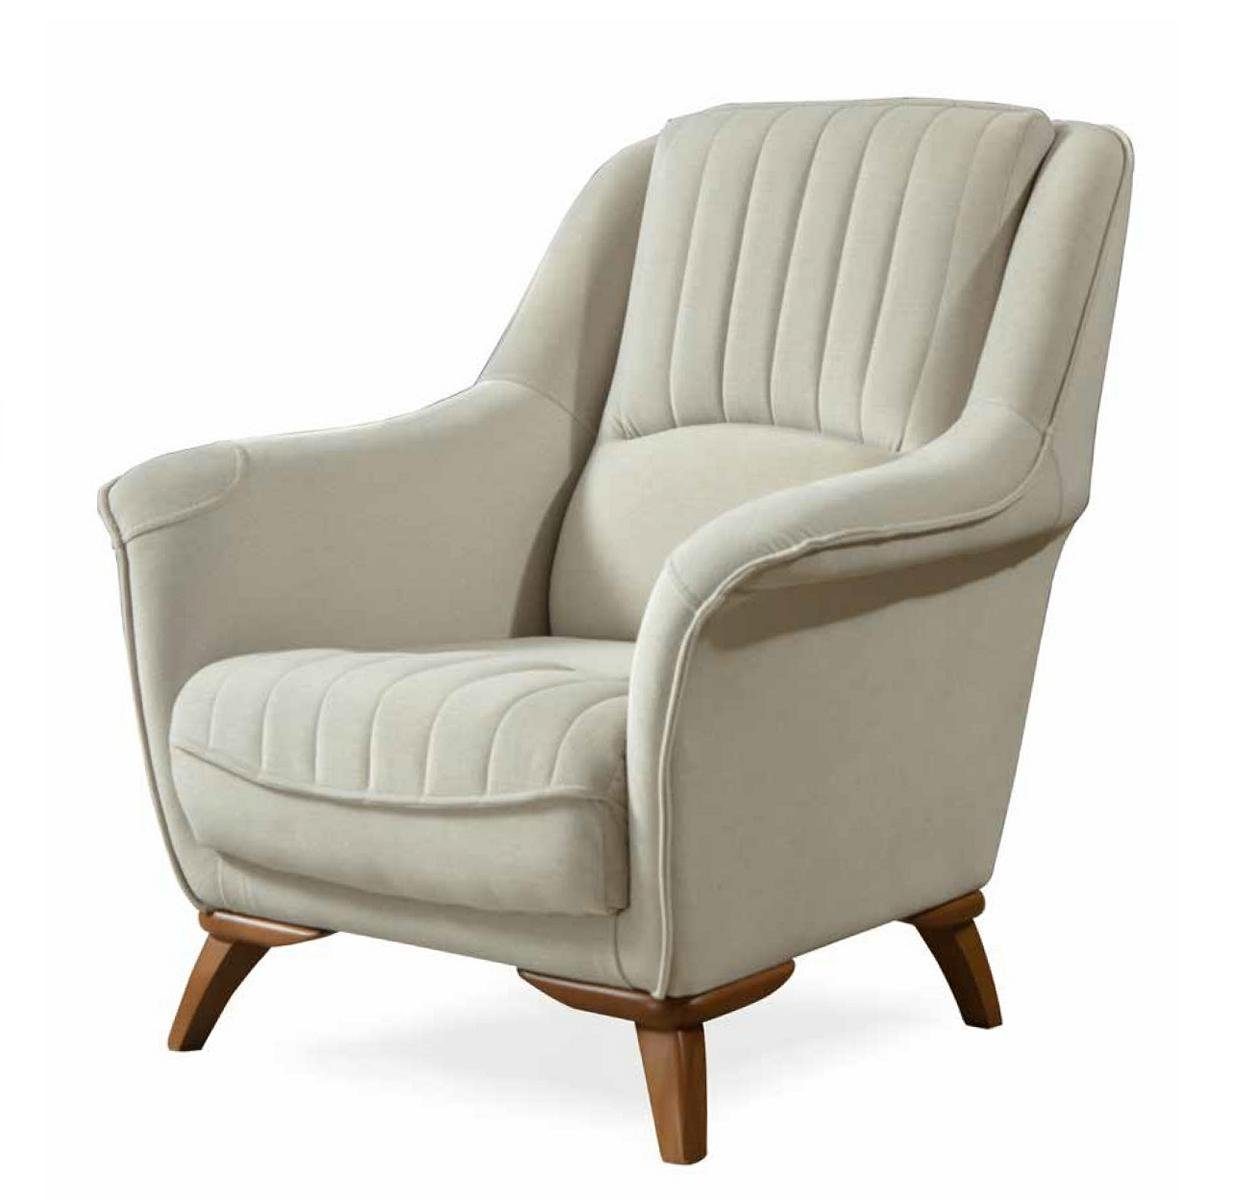 Weiß JVmoebel Polster Einsitzer Sitz Stil Klassisch Luxus Design Relax Sessel Sessel